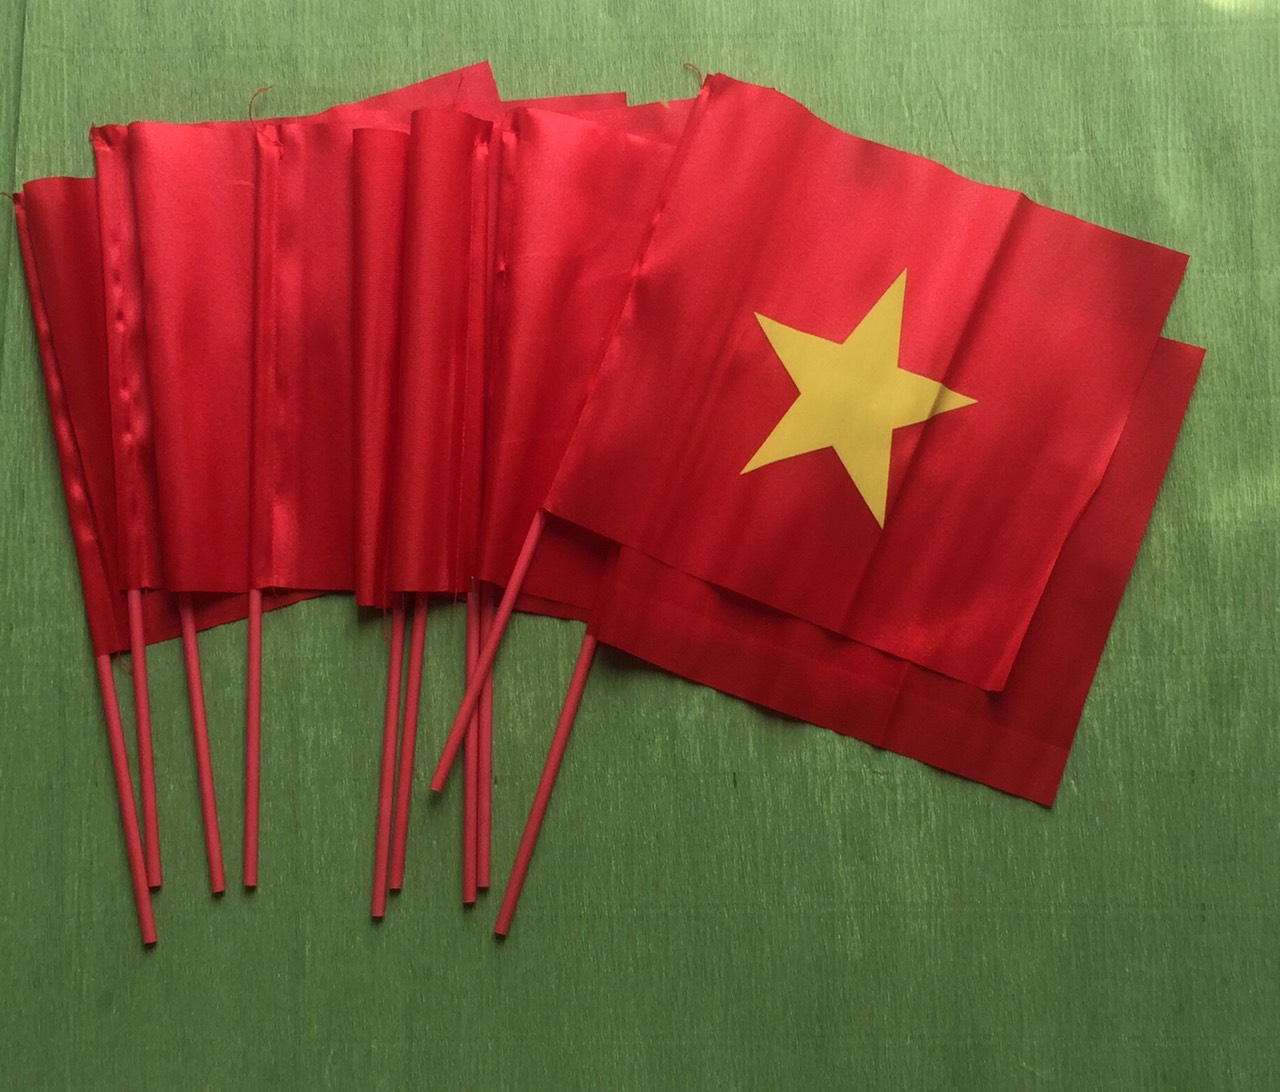 Bạn đang tìm kiếm một combo 5 lá cờ Việt Nam cầm tay vũ bóng đá để tạo ra hiệu ứng ấn tượng tại sân vận động và trên mạng xã hội? Nhanvan.vn mang đến cho bạn những sản phẩm combo cờ Việt Nam với chất lượng hàng đầu, đa dạng thiết kế và giá cả phải chăng. Hãy trang trí trang phục và sân vận động của bạn với các sản phẩm cờ Việt Nam của chúng tôi.